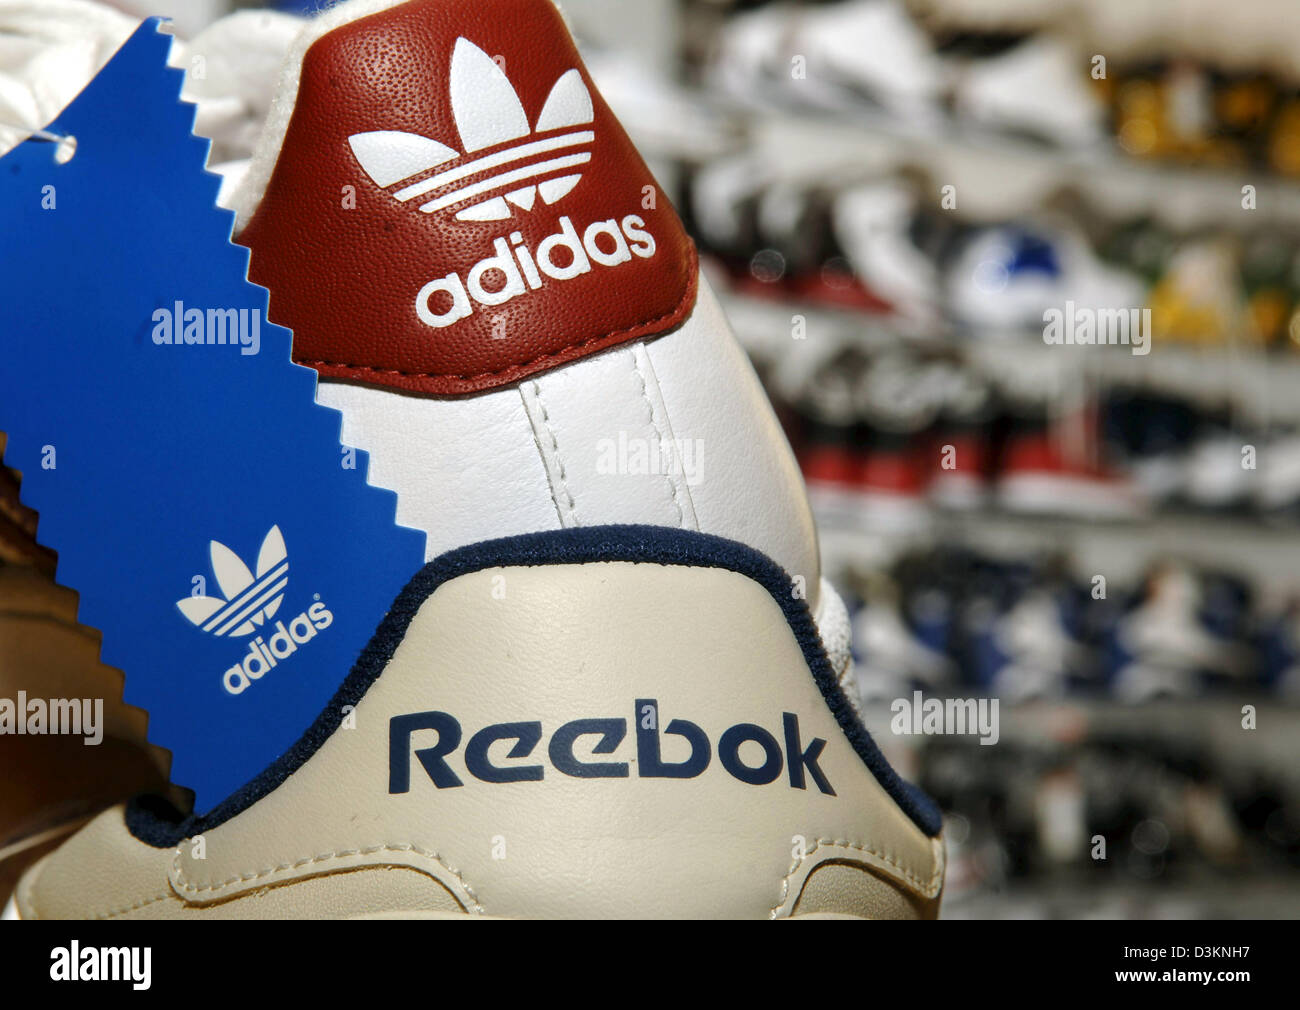 Afp) - l'image montre un sneaker adidas sur le dessus d'un sneaker Reebok  dans un magasin d'articles de sport à Munich, Allemagne, le mercredi 03  août 2005. En vue de combler le